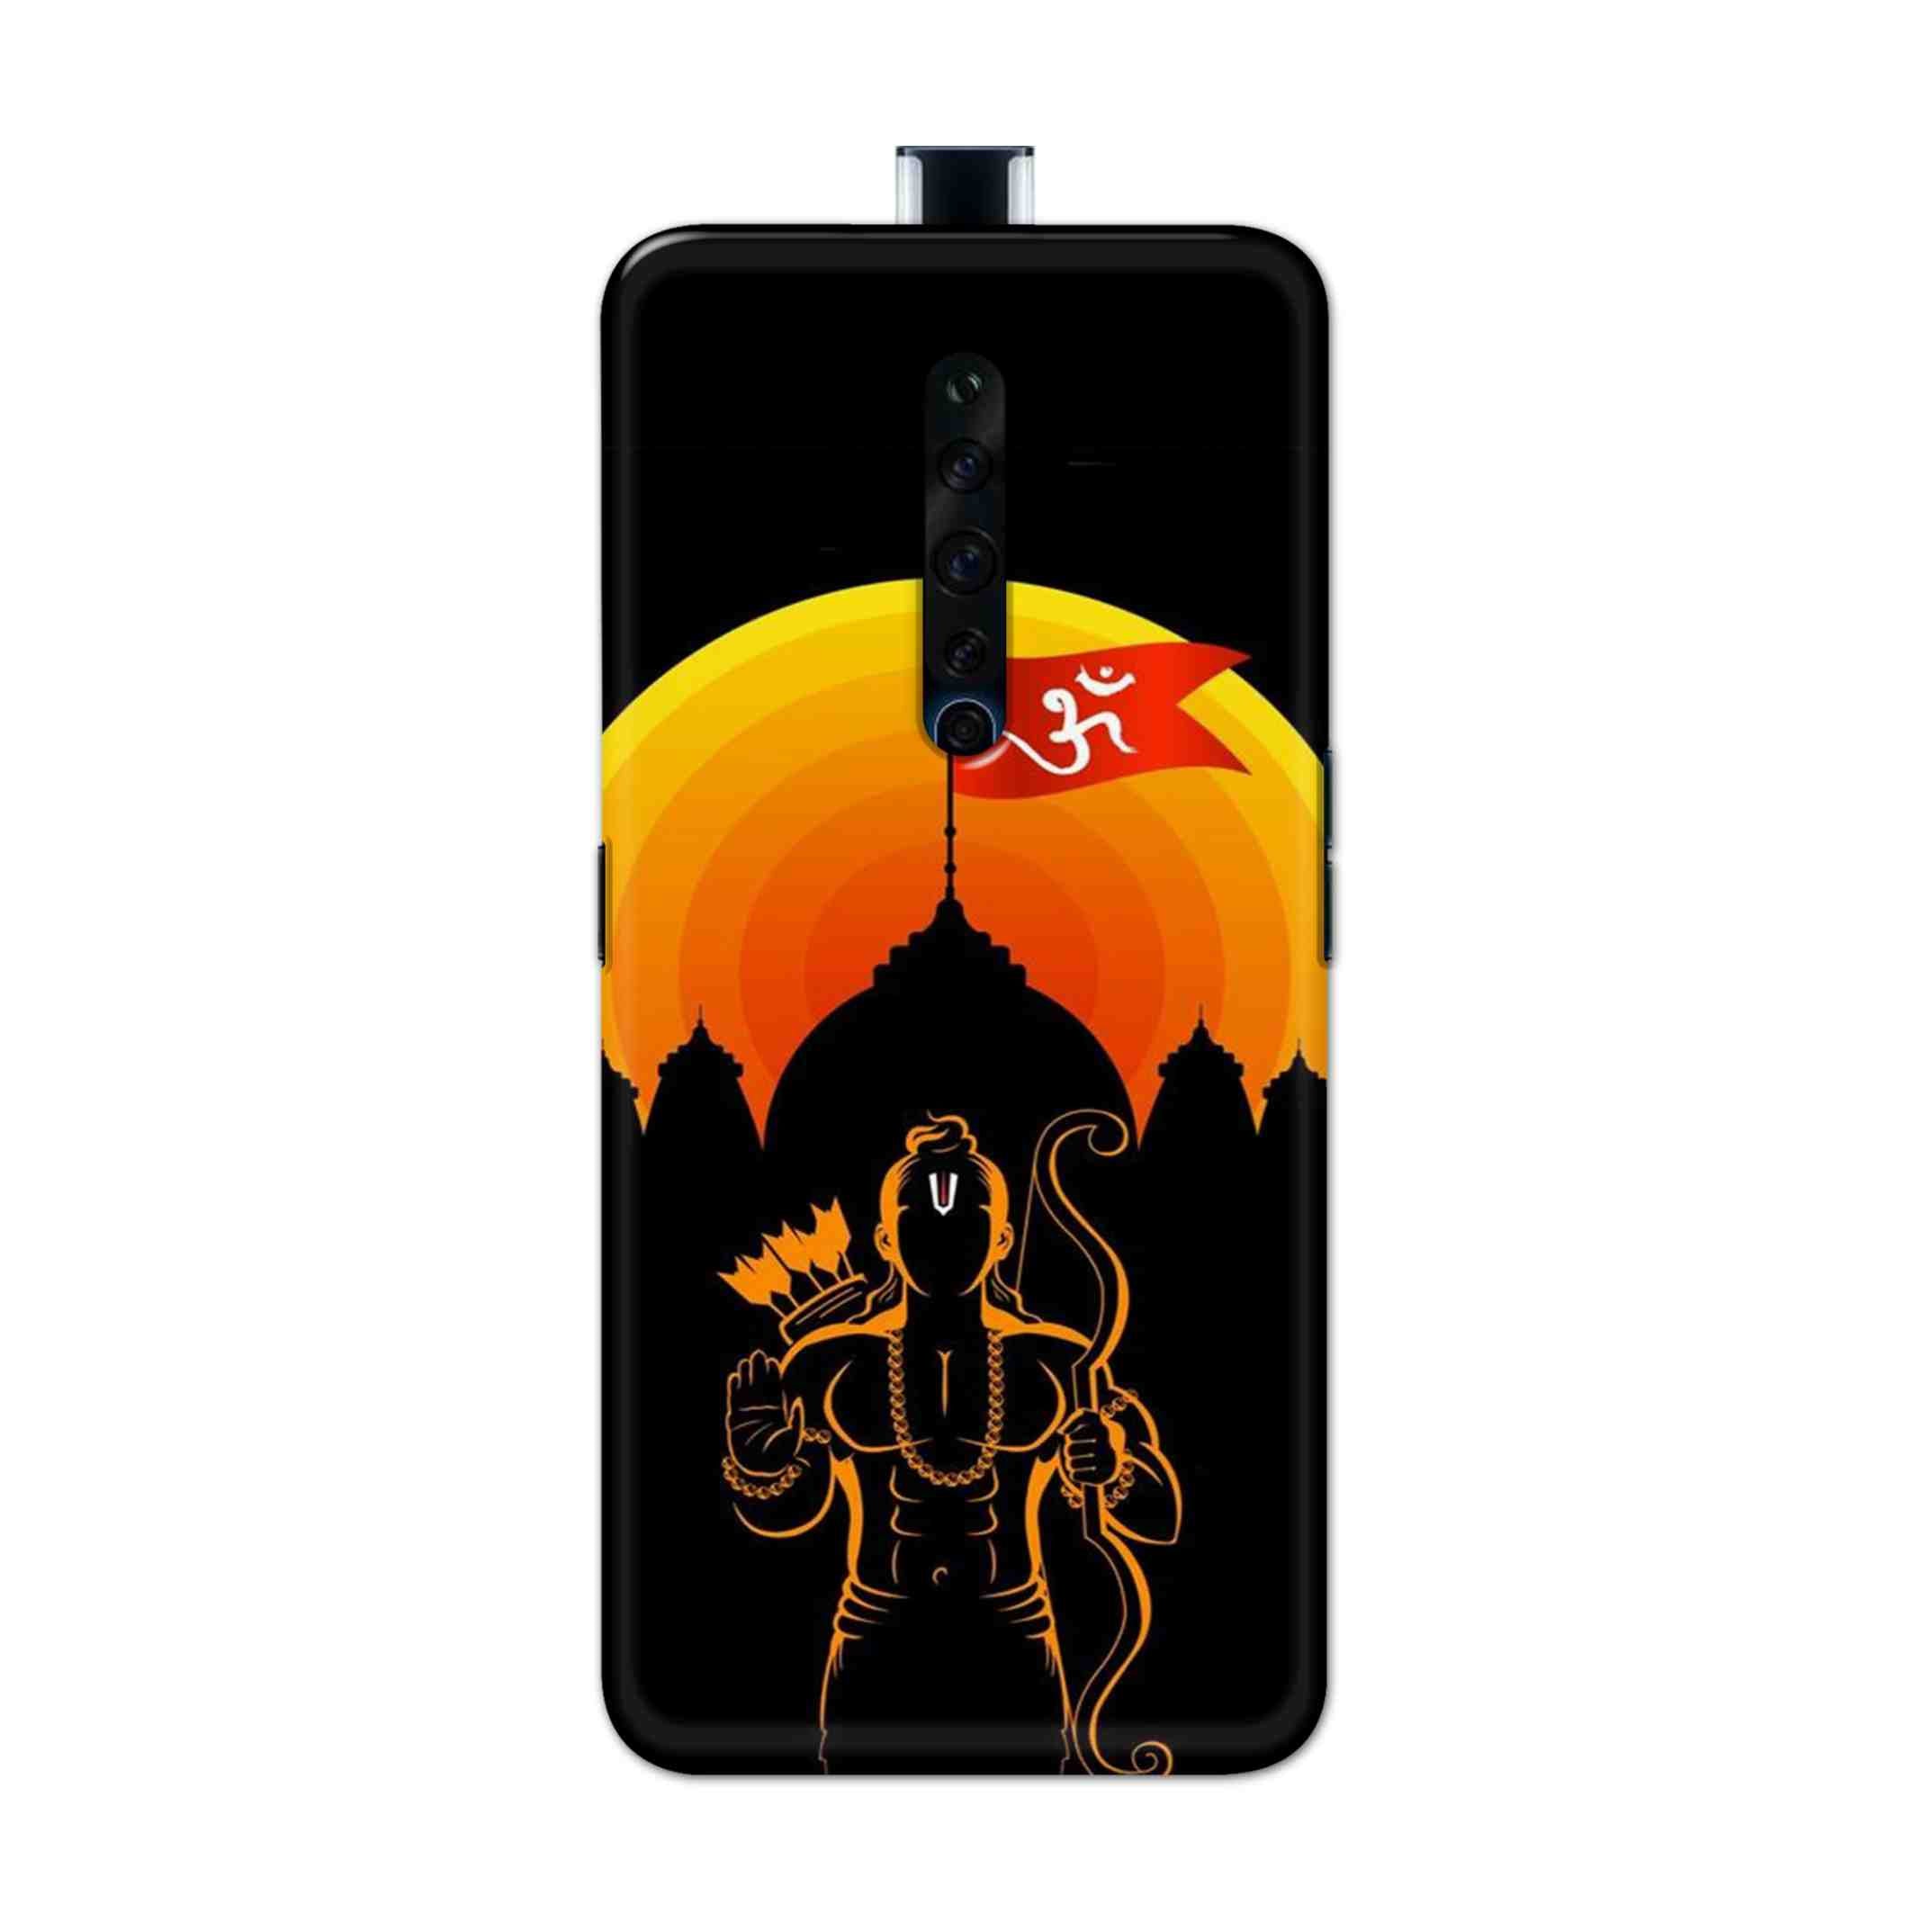 Buy Ram Ji Hard Back Mobile Phone Case Cover For Oppo Reno 2Z Online